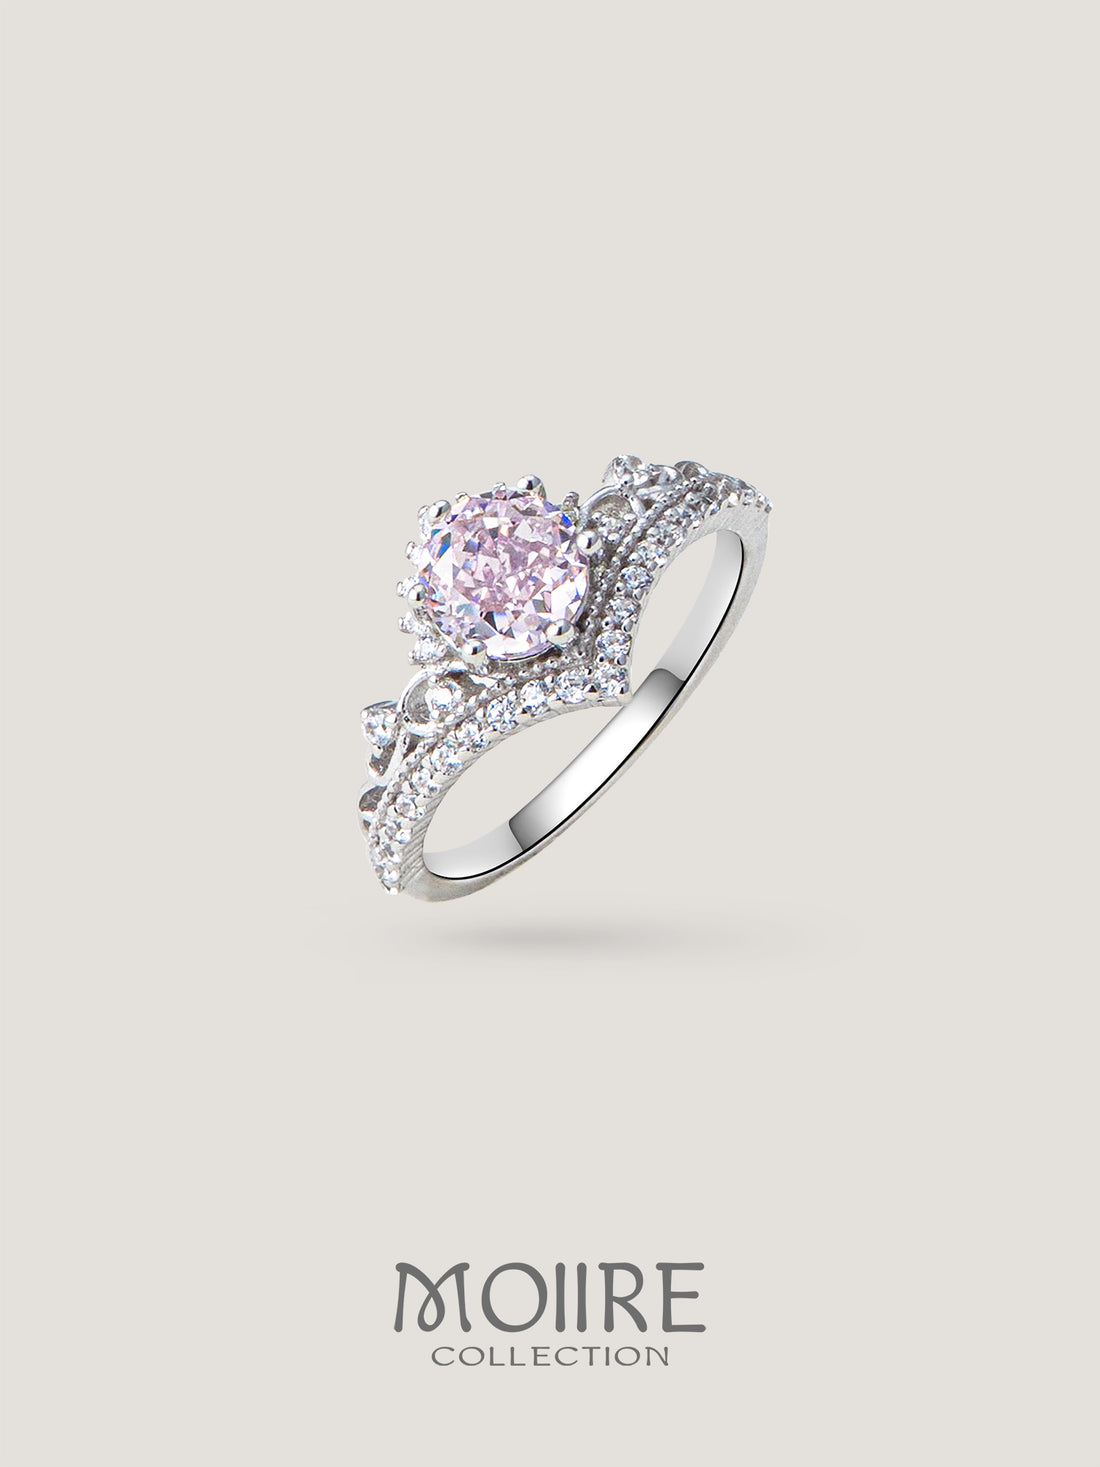 Moiire Jewelry | 靜靜愛